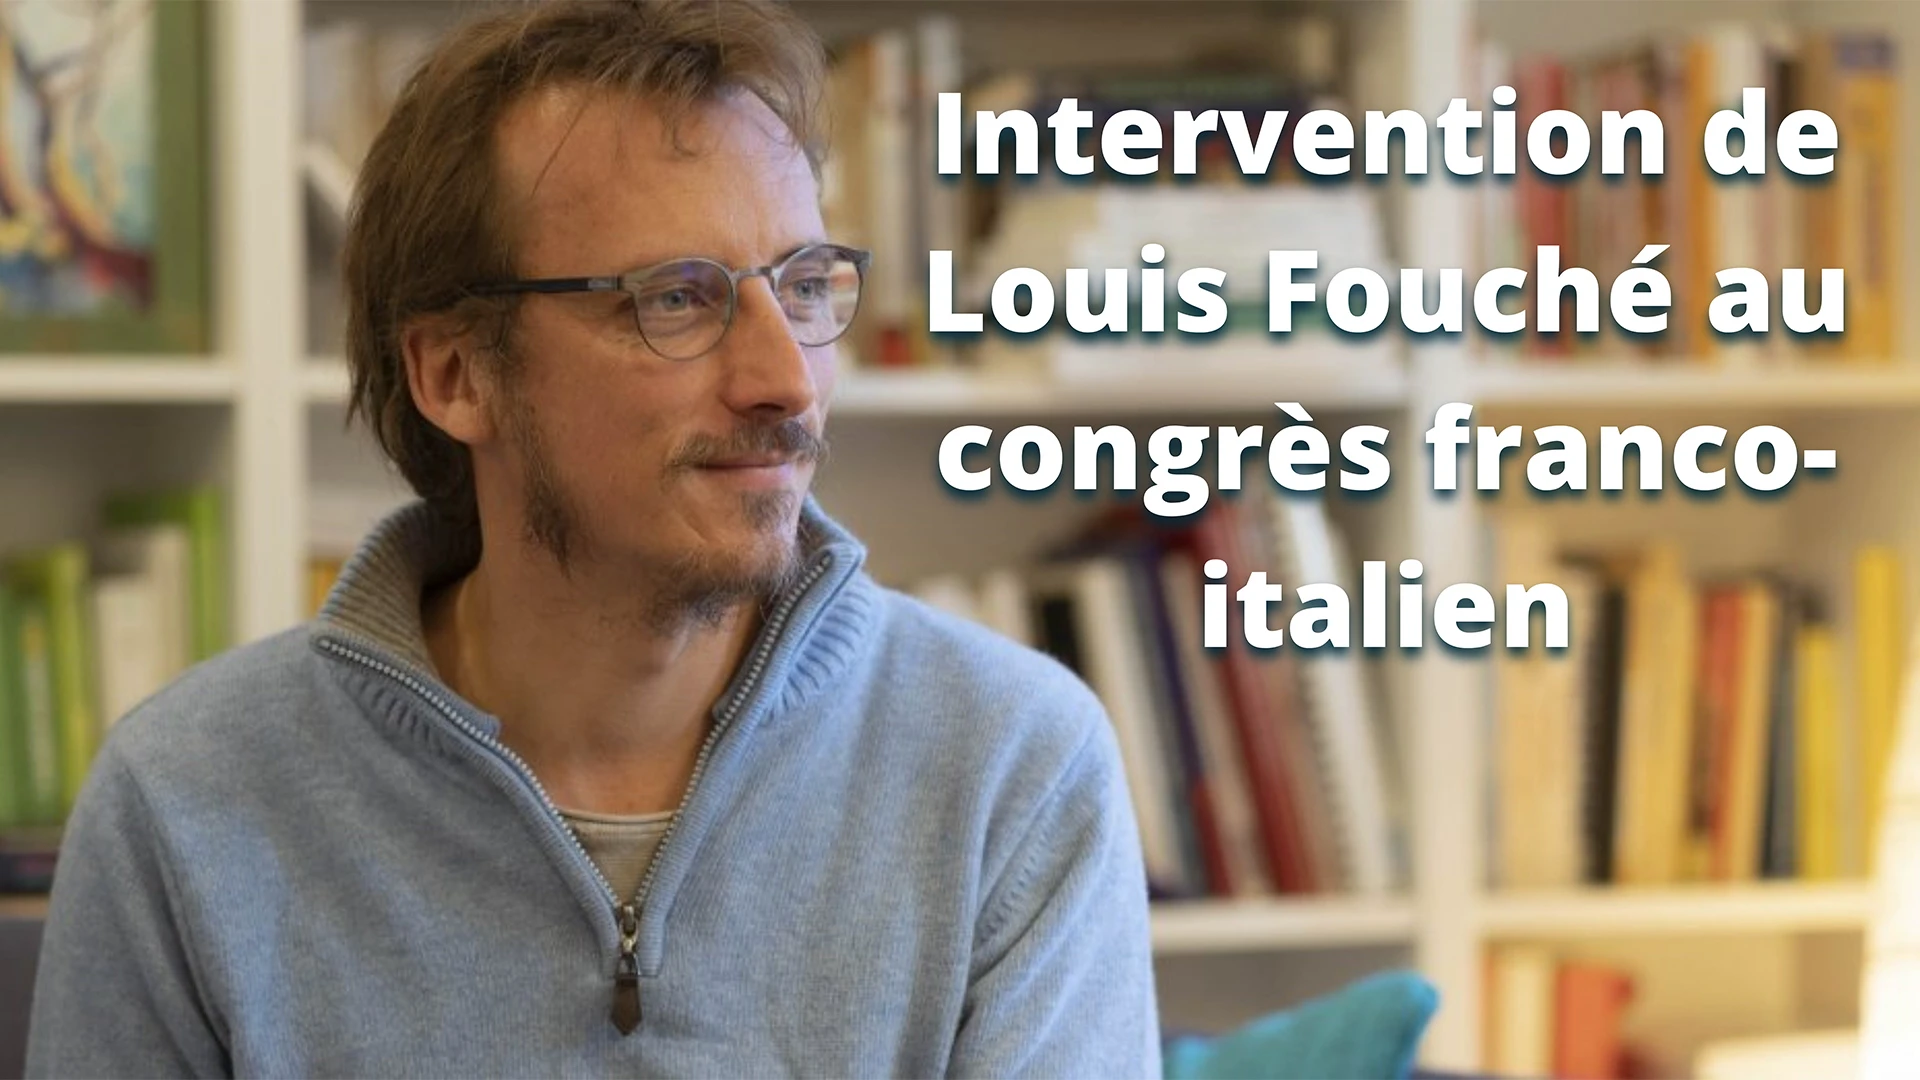 Louis Fouché au congrès franco-Italien, et le mot d’Ilan